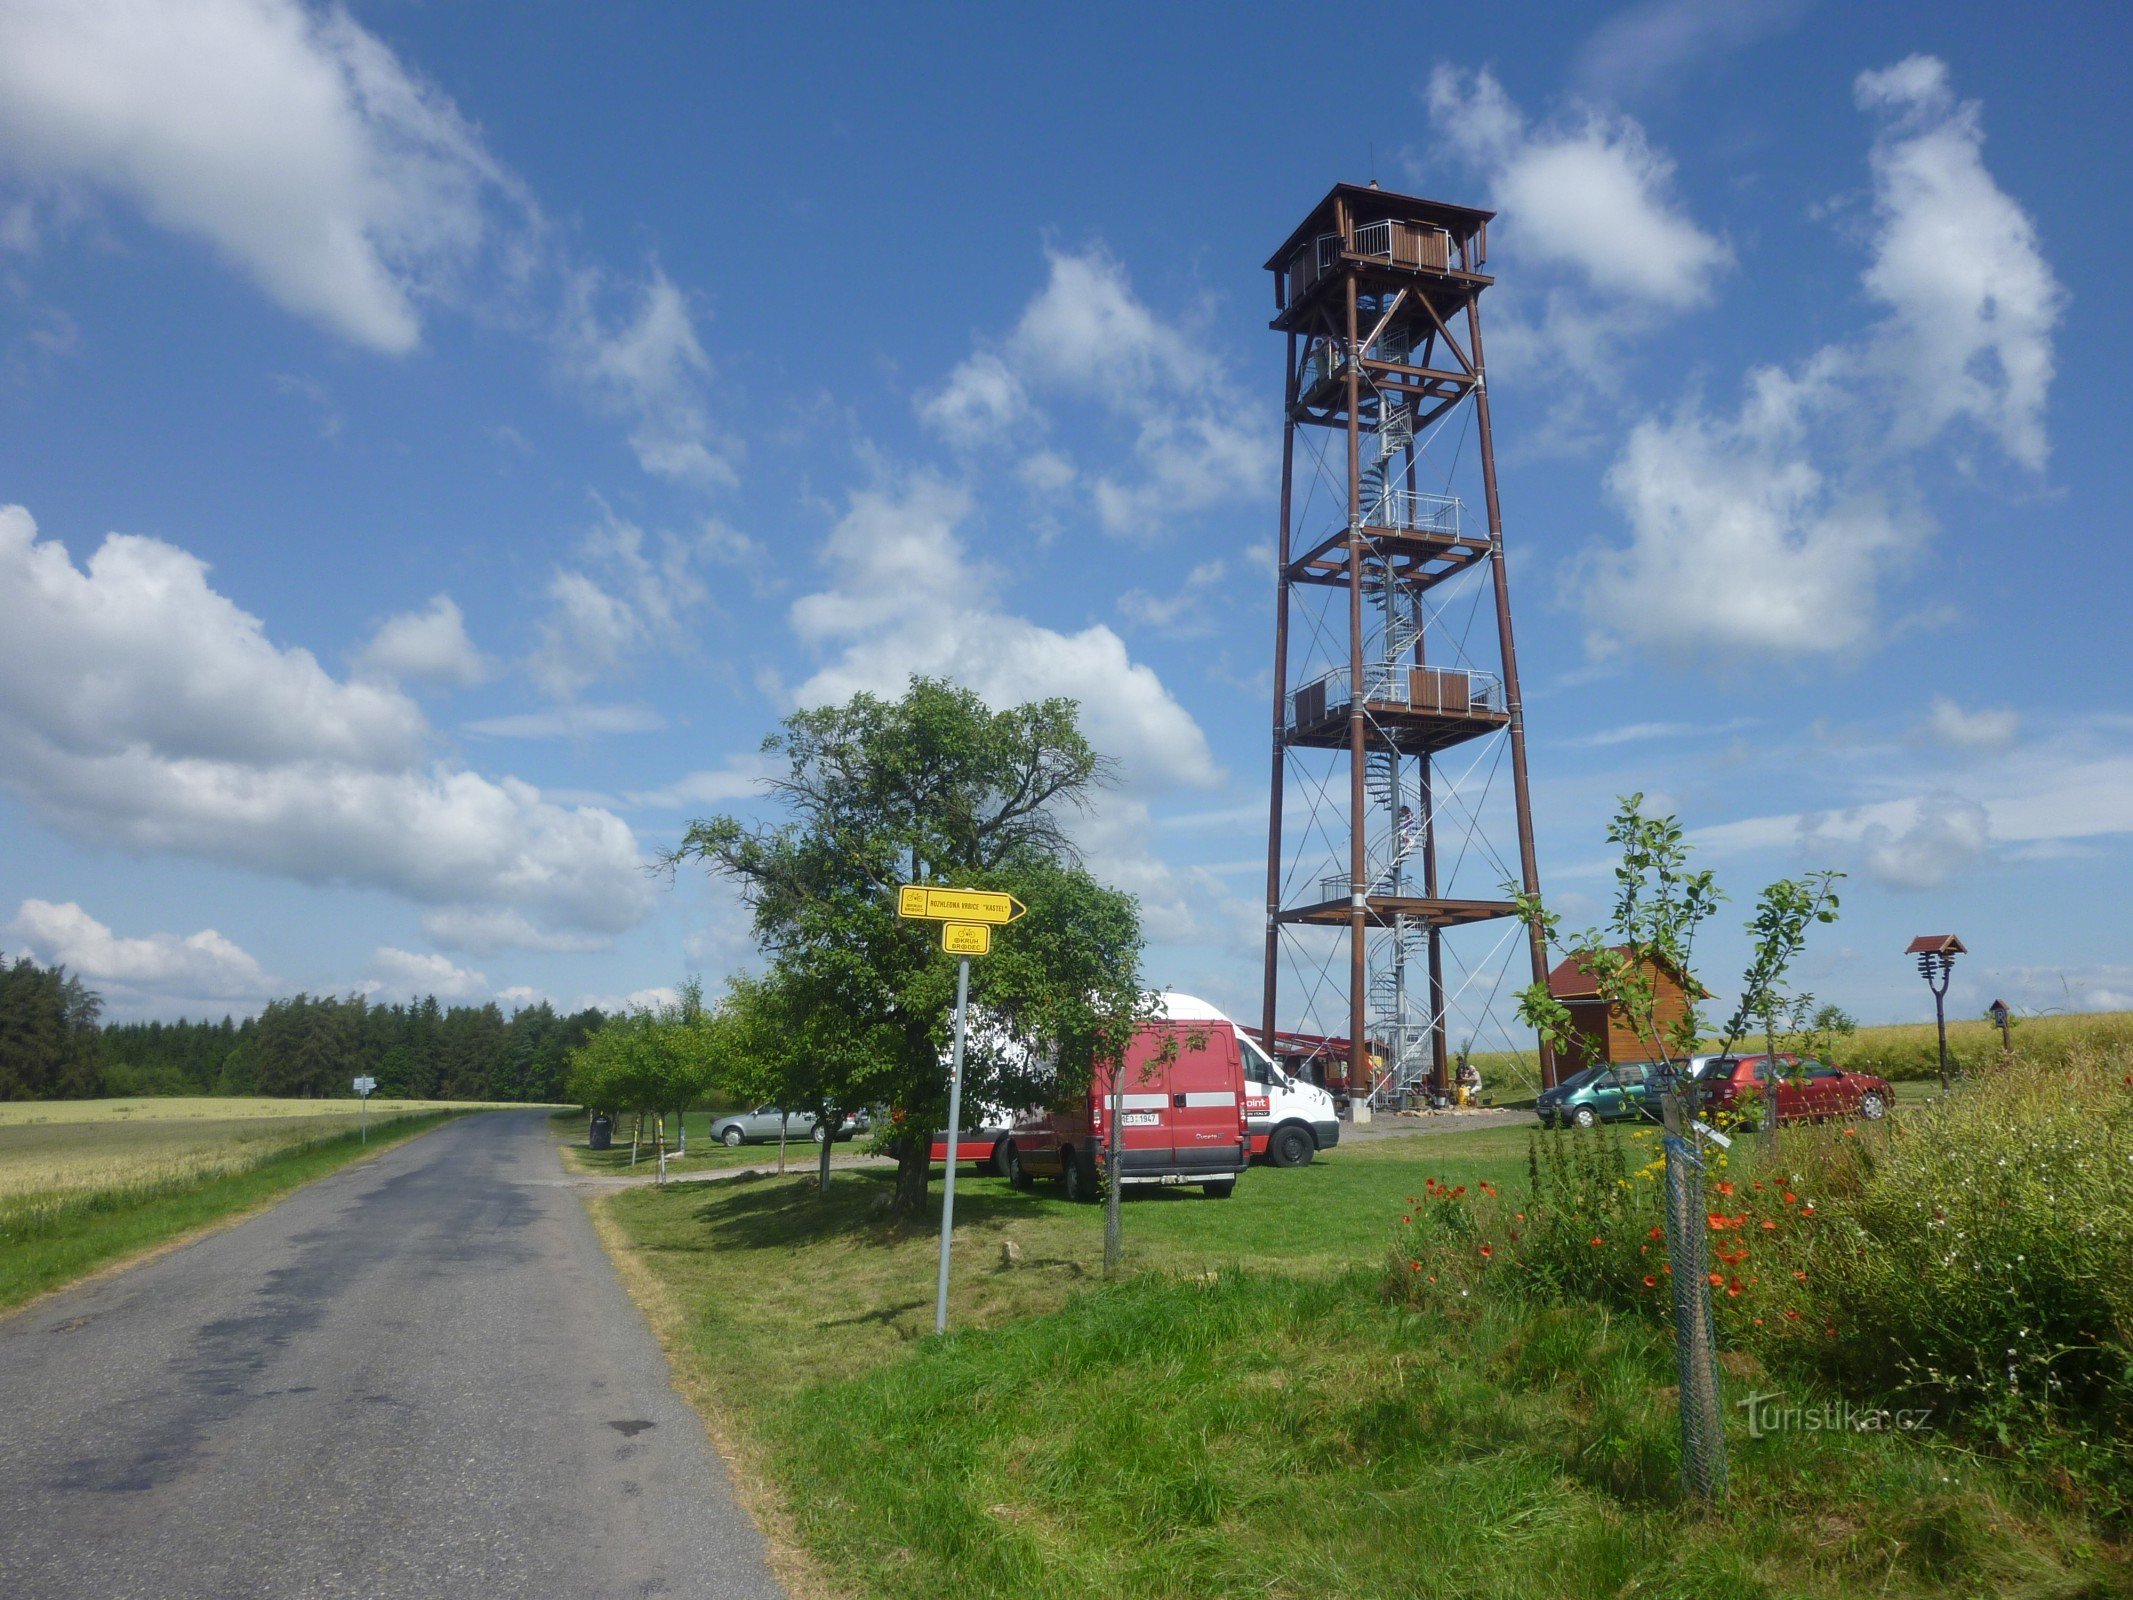 Torre mirador de Vrbice